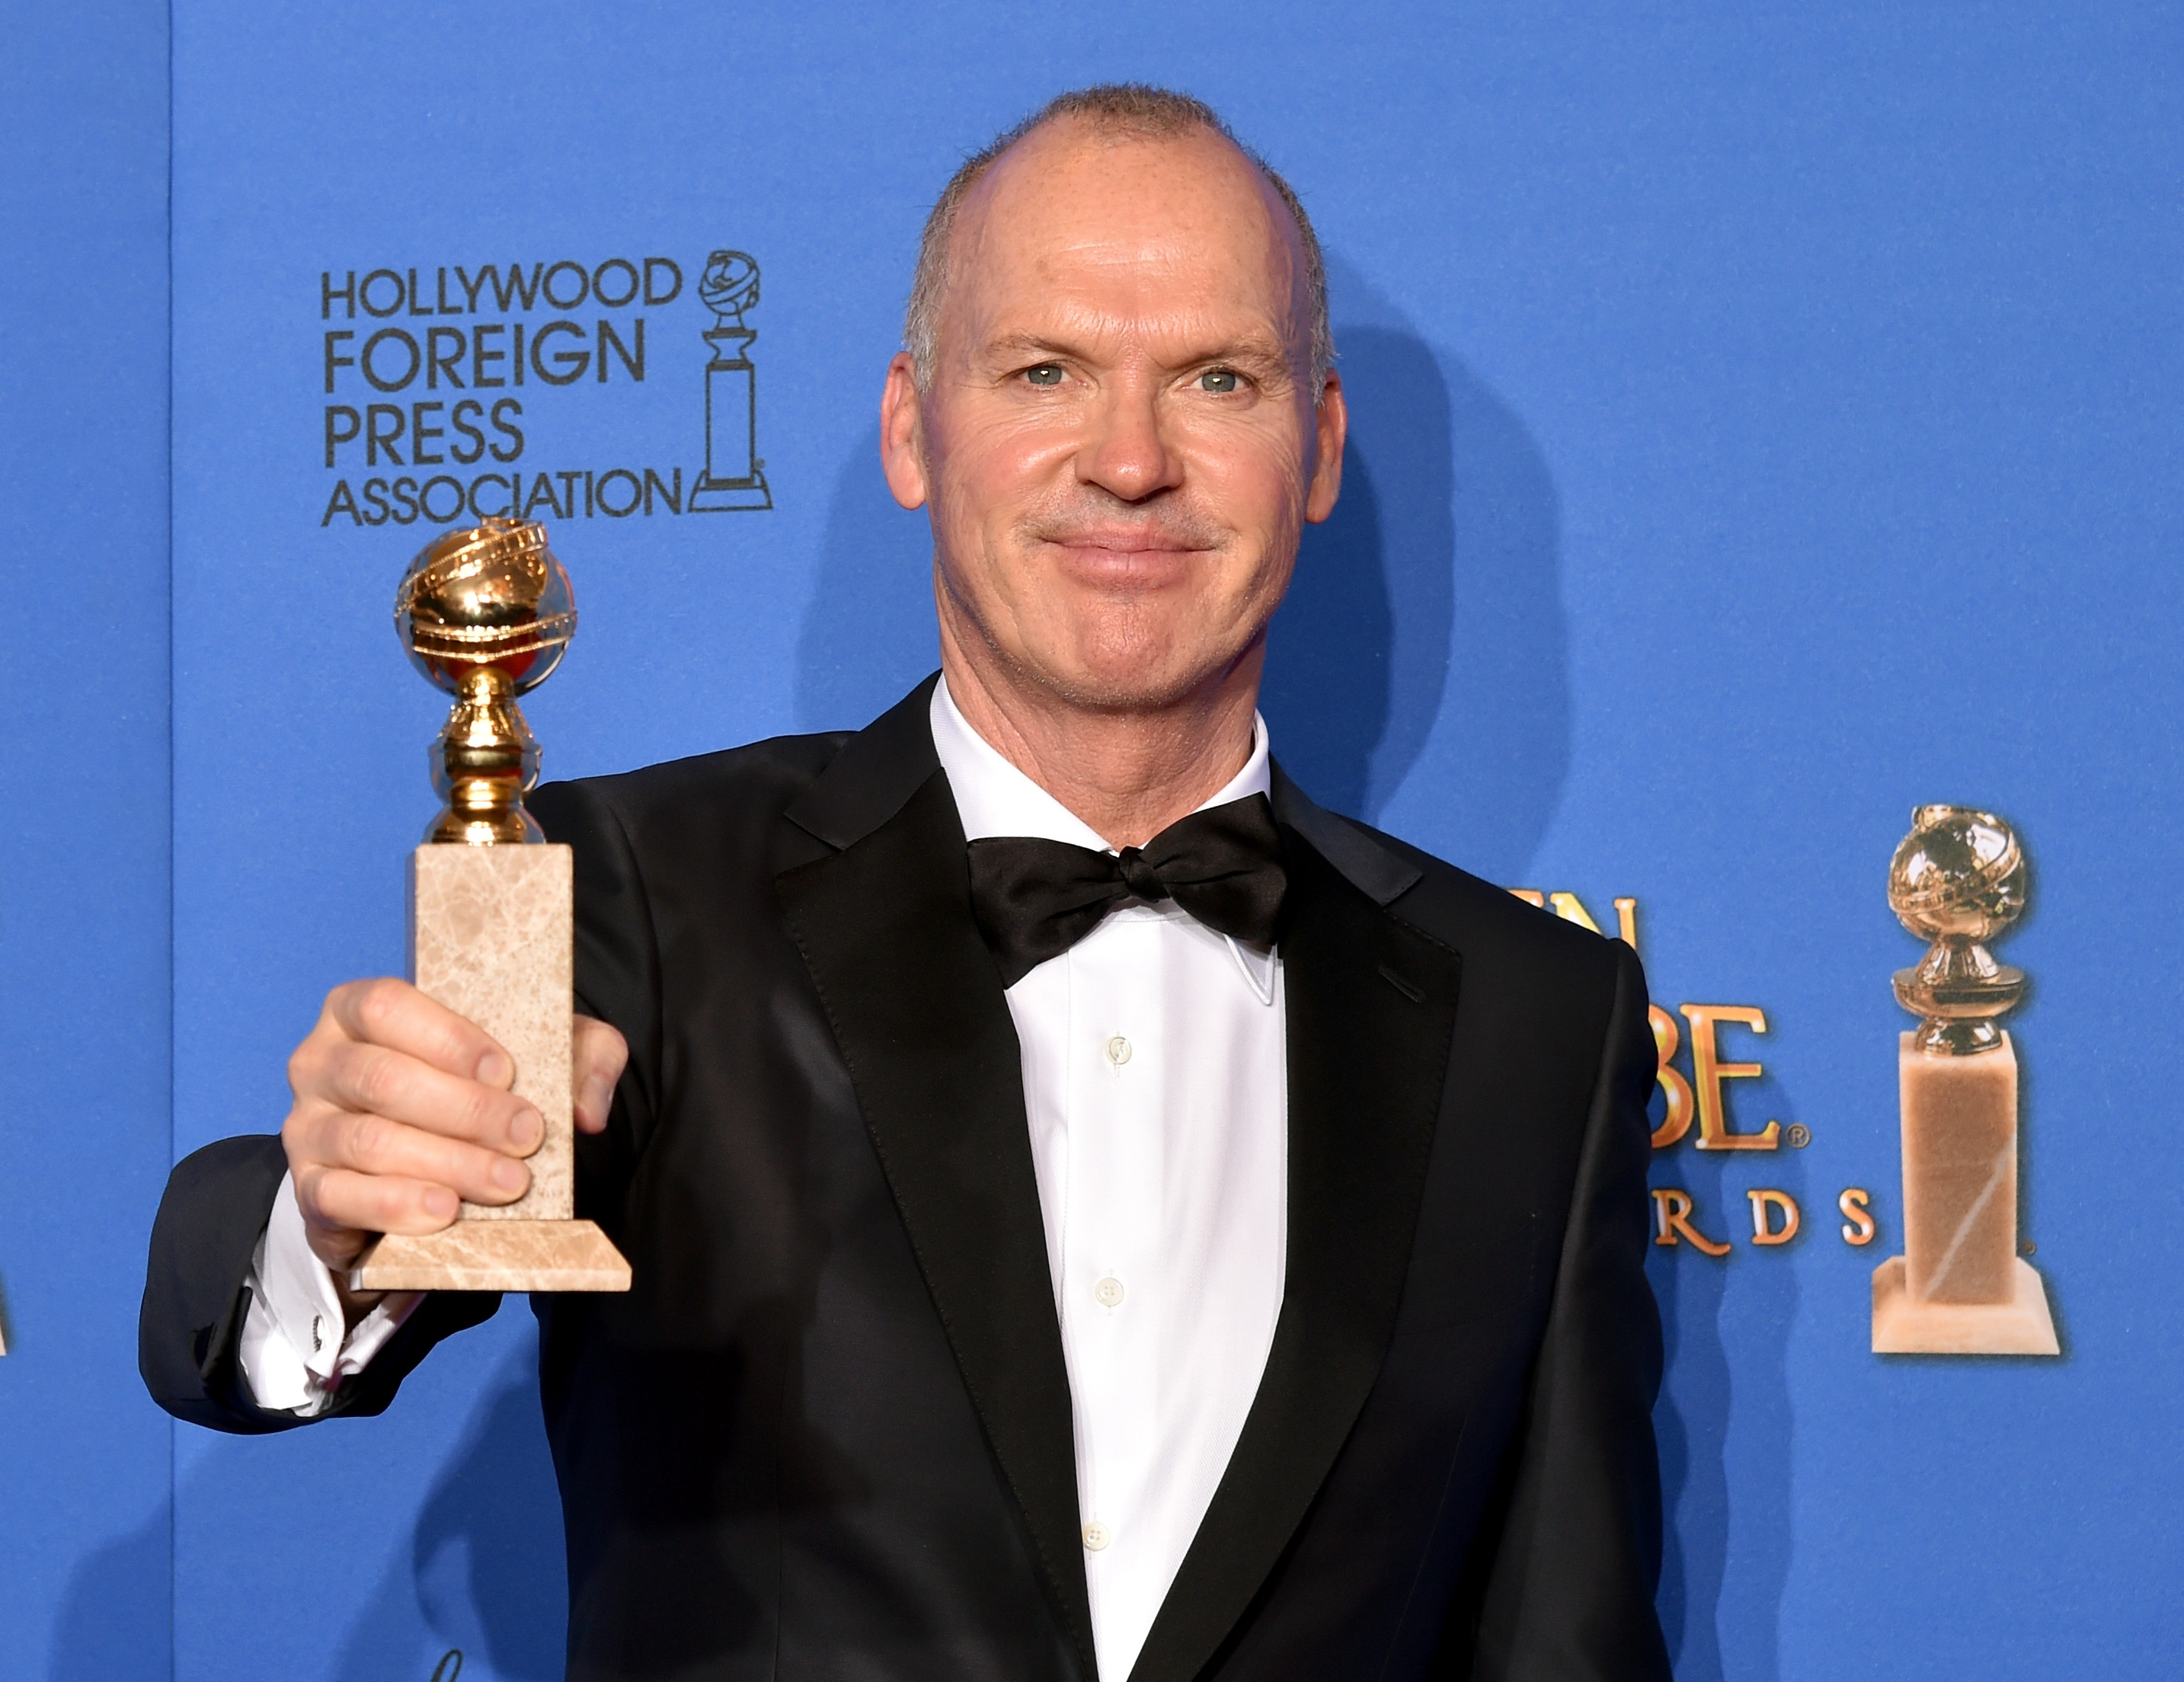 Golden Globe Awards 2015 list of winners CBS News